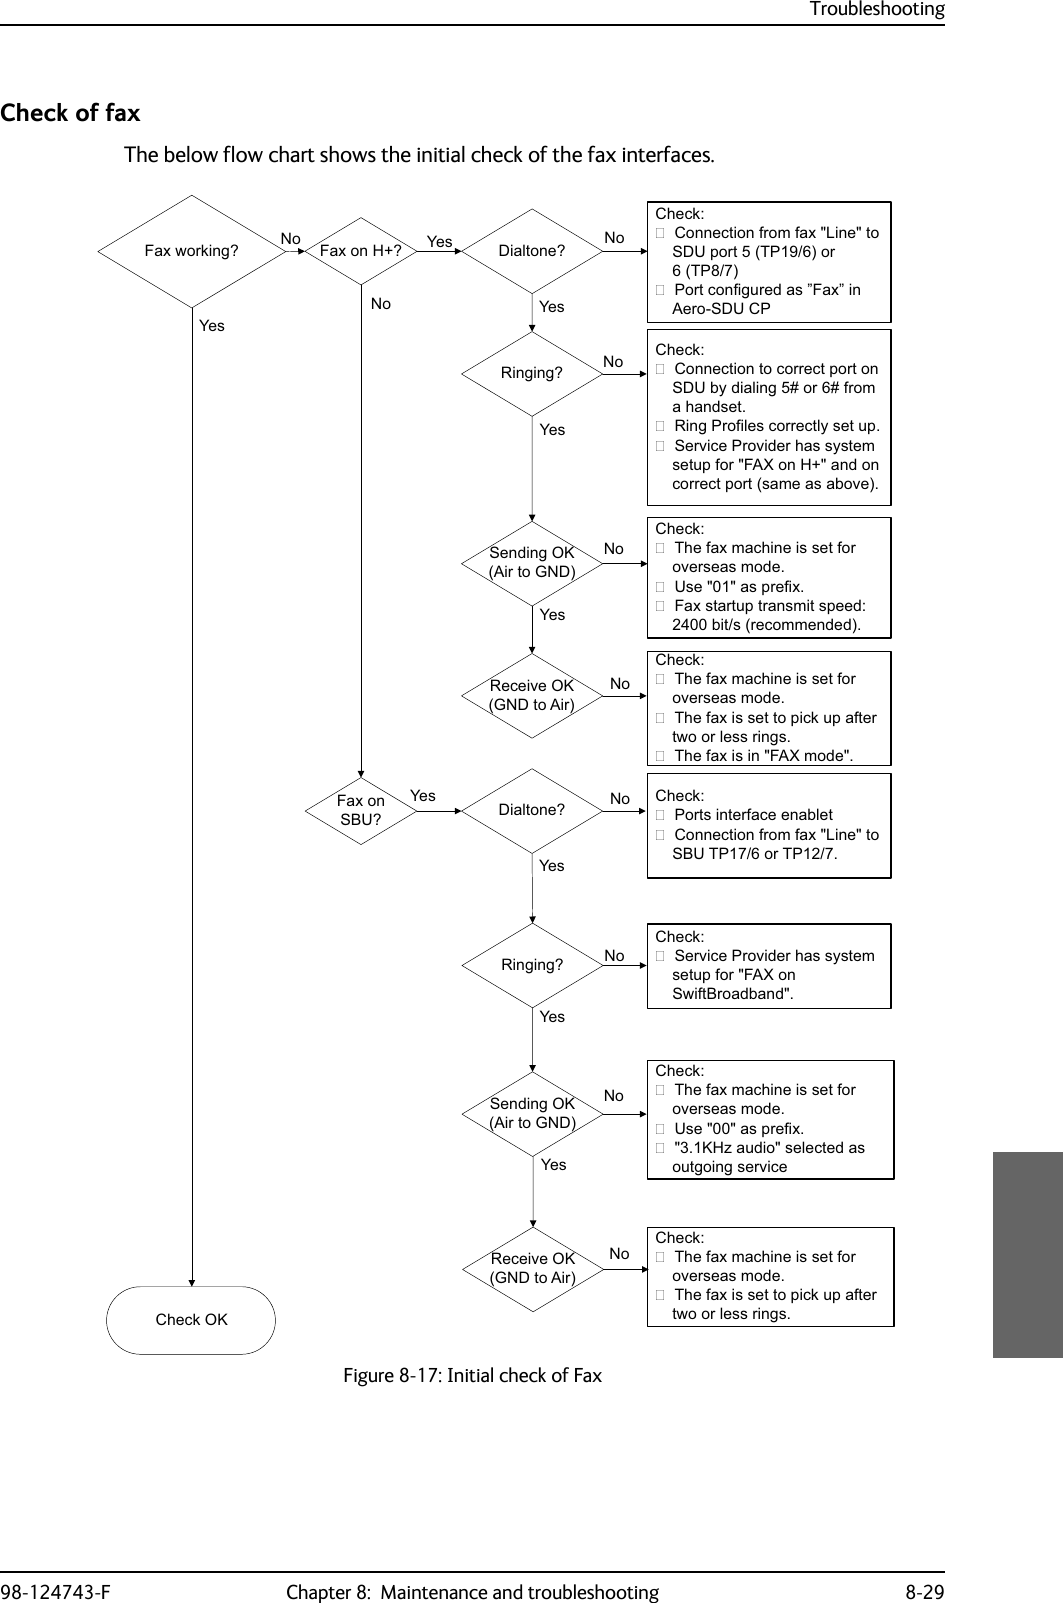 Troubleshooting98-124743-F Chapter 8:  Maintenance and troubleshooting 8-29Check of faxThe below flow chart shows the initial check of the fax interfaces.Figure 8-17: Initial check of Fax&amp;KHFN2.&lt;HV1R1R&amp;KHFN&amp;RQQHFWLRQIURPID[/LQHWR6&apos;8SRUW73RU733RUWFRQILJXUHGDV´)D[´LQ$HUR6&apos;8&amp;3&amp;KHFN&amp;RQQHFWLRQWRFRUUHFWSRUWRQ6&apos;8E\GLDOLQJRUIURPDKDQGVHW5LQJ3URILOHVFRUUHFWO\VHWXS6HUYLFH3URYLGHUKDVV\VWHPVHWXSIRU)$;RQ+DQGRQFRUUHFWSRUWVDPHDVDERYH&amp;KHFN7KHID[PDFKLQHLVVHWIRURYHUVHDVPRGH8VHDVSUHIL[.+]DXGLRVHOHFWHGDVRXWJRLQJVHUYLFH&amp;KHFN7KHID[PDFKLQHLVVHWIRURYHUVHDVPRGH7KHID[LVVHWWRSLFNXSDIWHUWZRRUOHVVULQJV&lt;HV 1R1R&lt;HV1R&lt;HV1R&lt;HV)D[ZRUNLQJ&quot; )D[RQ+&quot; &apos;LDOWRQH&quot;5LQJLQJ&quot;)D[RQ6%8&quot;6HQGLQJ2.$LUWR*1&apos;5HFHLYH2.*1&apos;WR$LU&amp;KHFN7KHID[PDFKLQHLVVHWIRURYHUVHDVPRGH8VHDVSUHIL[)D[VWDUWXSWUDQVPLWVSHHGELWVUHFRPPHQGHG&amp;KHFN7KHID[PDFKLQHLVVHWIRURYHUVHDVPRGH7KHID[LVVHWWRSLFNXSDIWHUWZRRUOHVVULQJV7KHID[LVLQ)$;PRGH&lt;HV1R1R6HQGLQJ2.$LUWR*1&apos;5HFHLYH2.*1&apos;WR$LU&lt;HV&amp;KHFN3RUWVLQWHUIDFHHQDEOHW&amp;RQQHFWLRQIURPID[/LQHWR6%873RU73&amp;KHFN6HUYLFH3URYLGHUKDVV\VWHPVHWXSIRU)$;RQ6ZLIW%URDGEDQG1R1R&lt;HV&apos;LDOWRQH&quot;5LQJLQJ&quot;&lt;HV&lt;HV